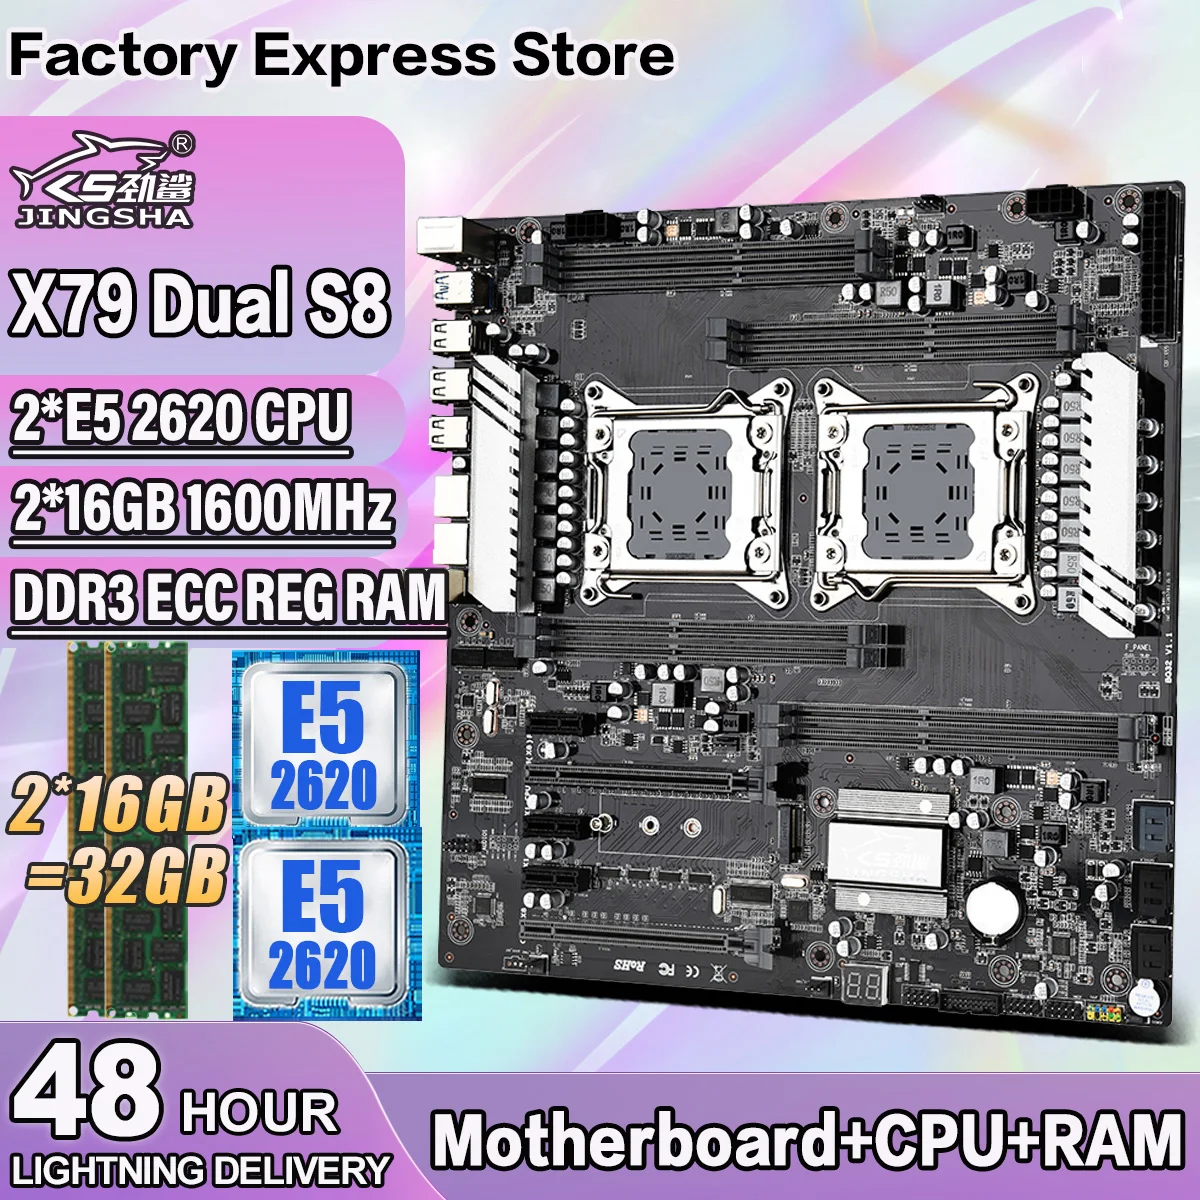 Процессор материнской платы JINGSHA X79 Dual S8 с процессором Intel Xone E5-2620 * 2 и процессором 2 * 16G = 32GB DDR3 1600MHz ECC REG с поддержкой процессора LGA2011